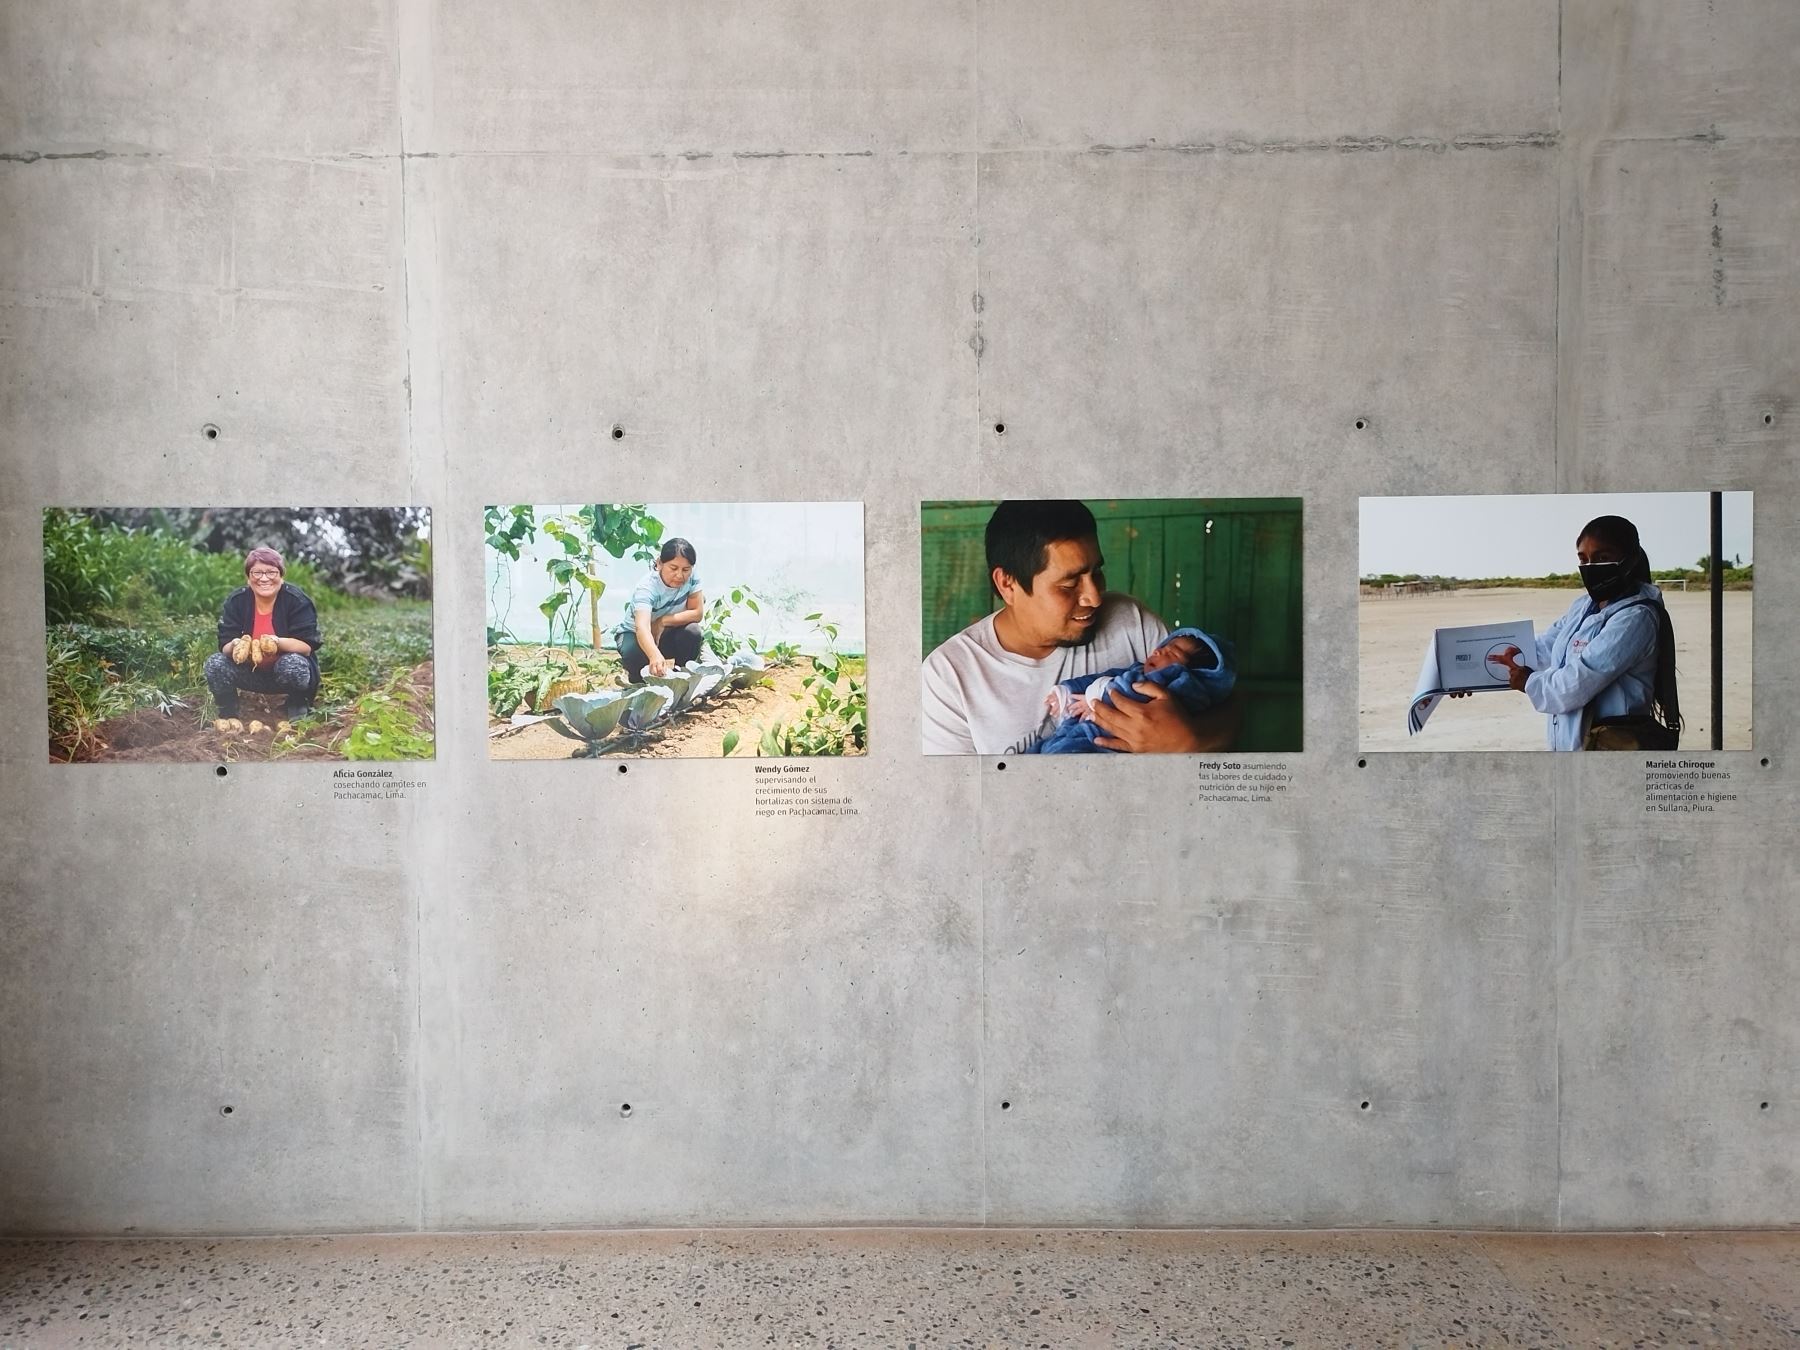 Foto de Semana Santa: Visita la muestra fotográfica “Ella Alimenta al Mundo: Agricultura es Cultura” que ya se exhibe en el MUNA